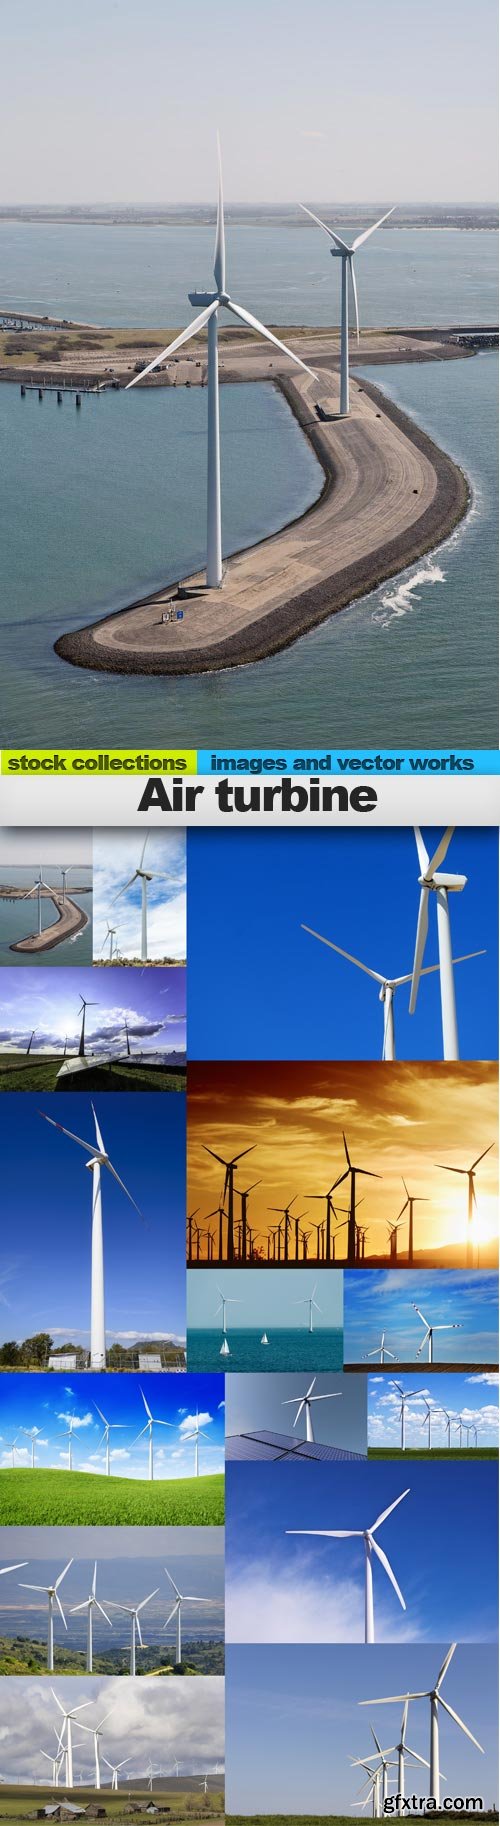 Air turbine, 15 x UHQ JPEG